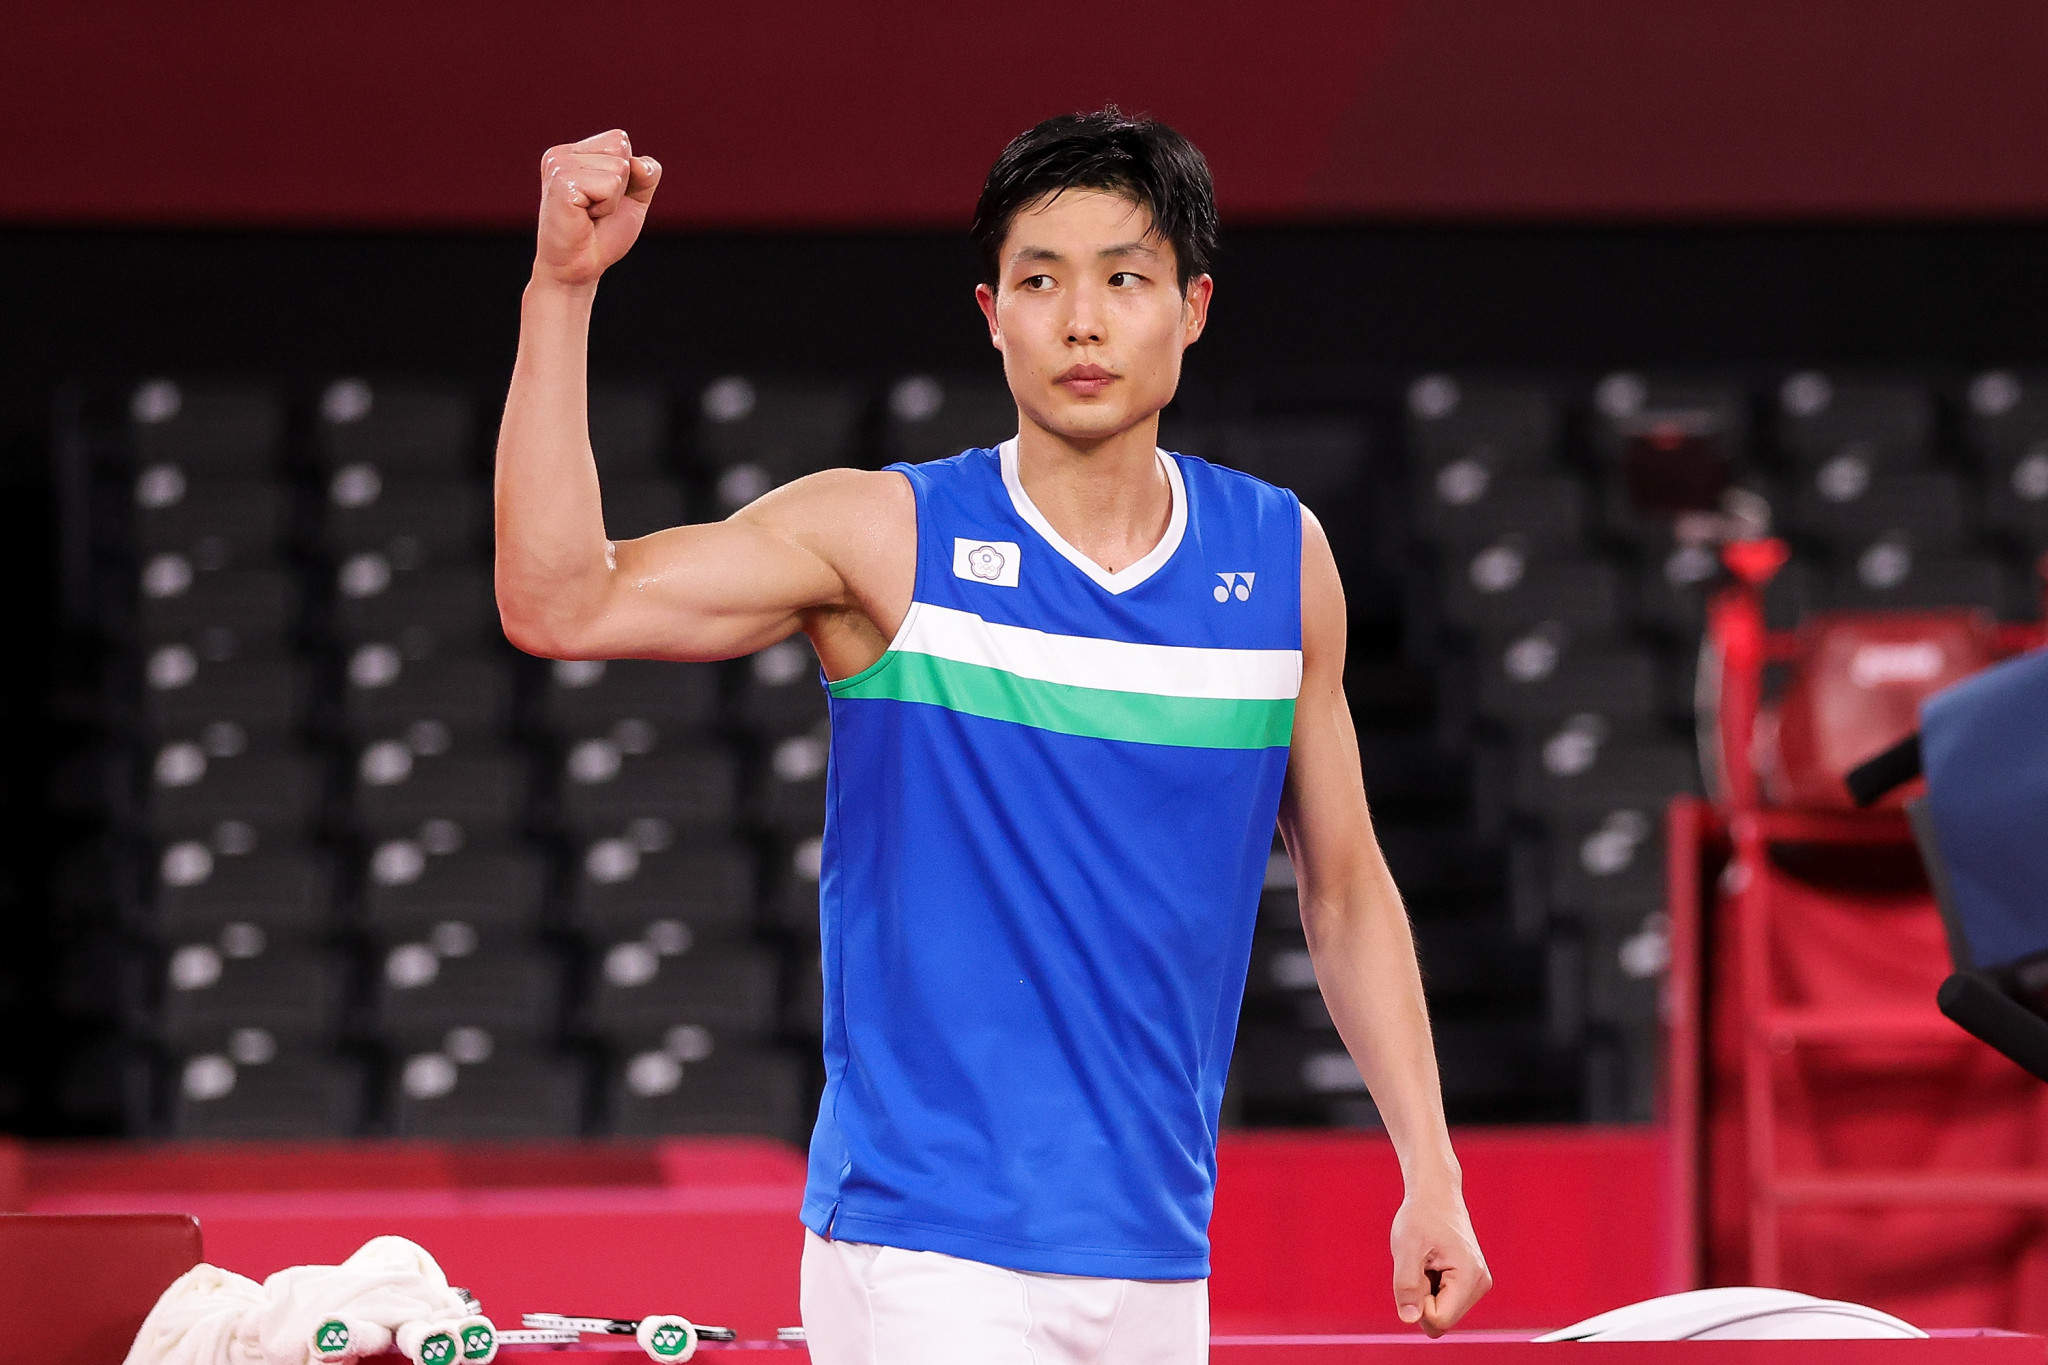 Zhang and Yang seek to defend Pan Am Individual Badminton Championships titles